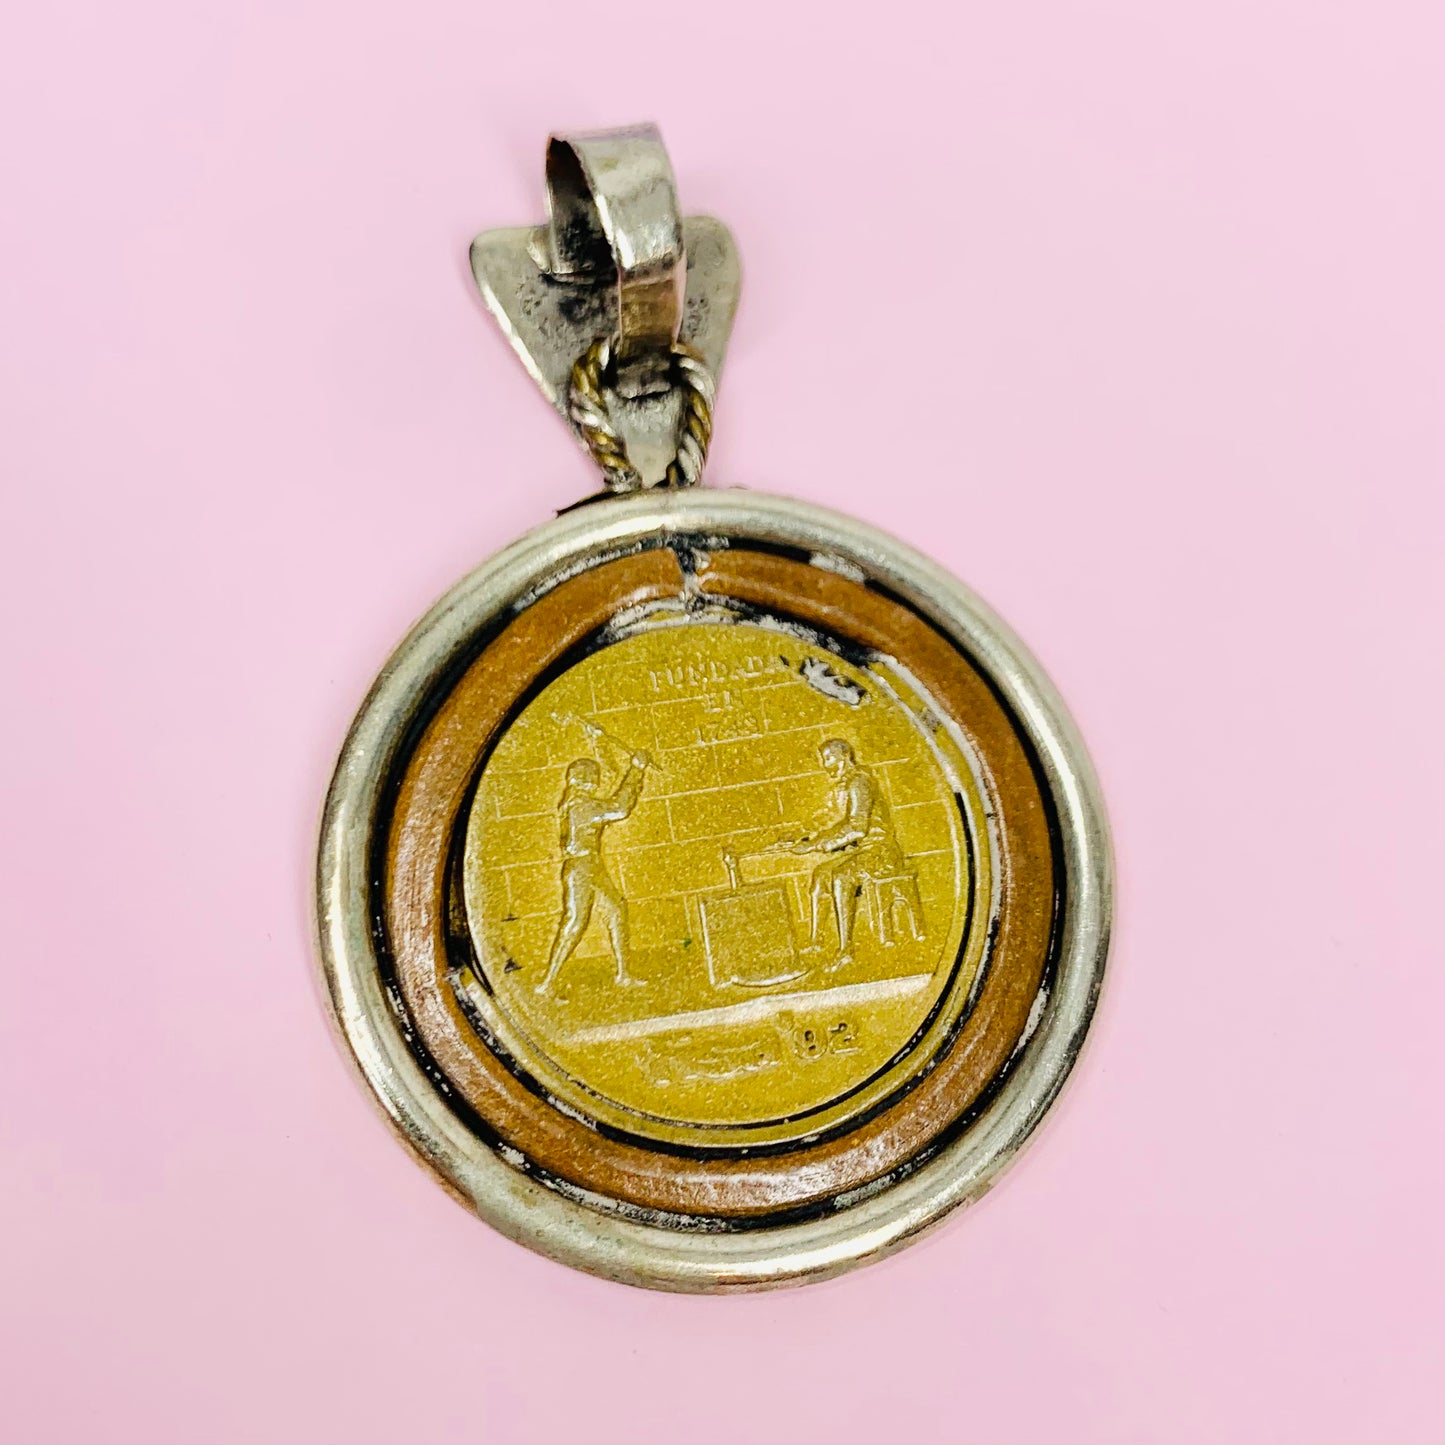 Vintage Chilean coin medallion pendant